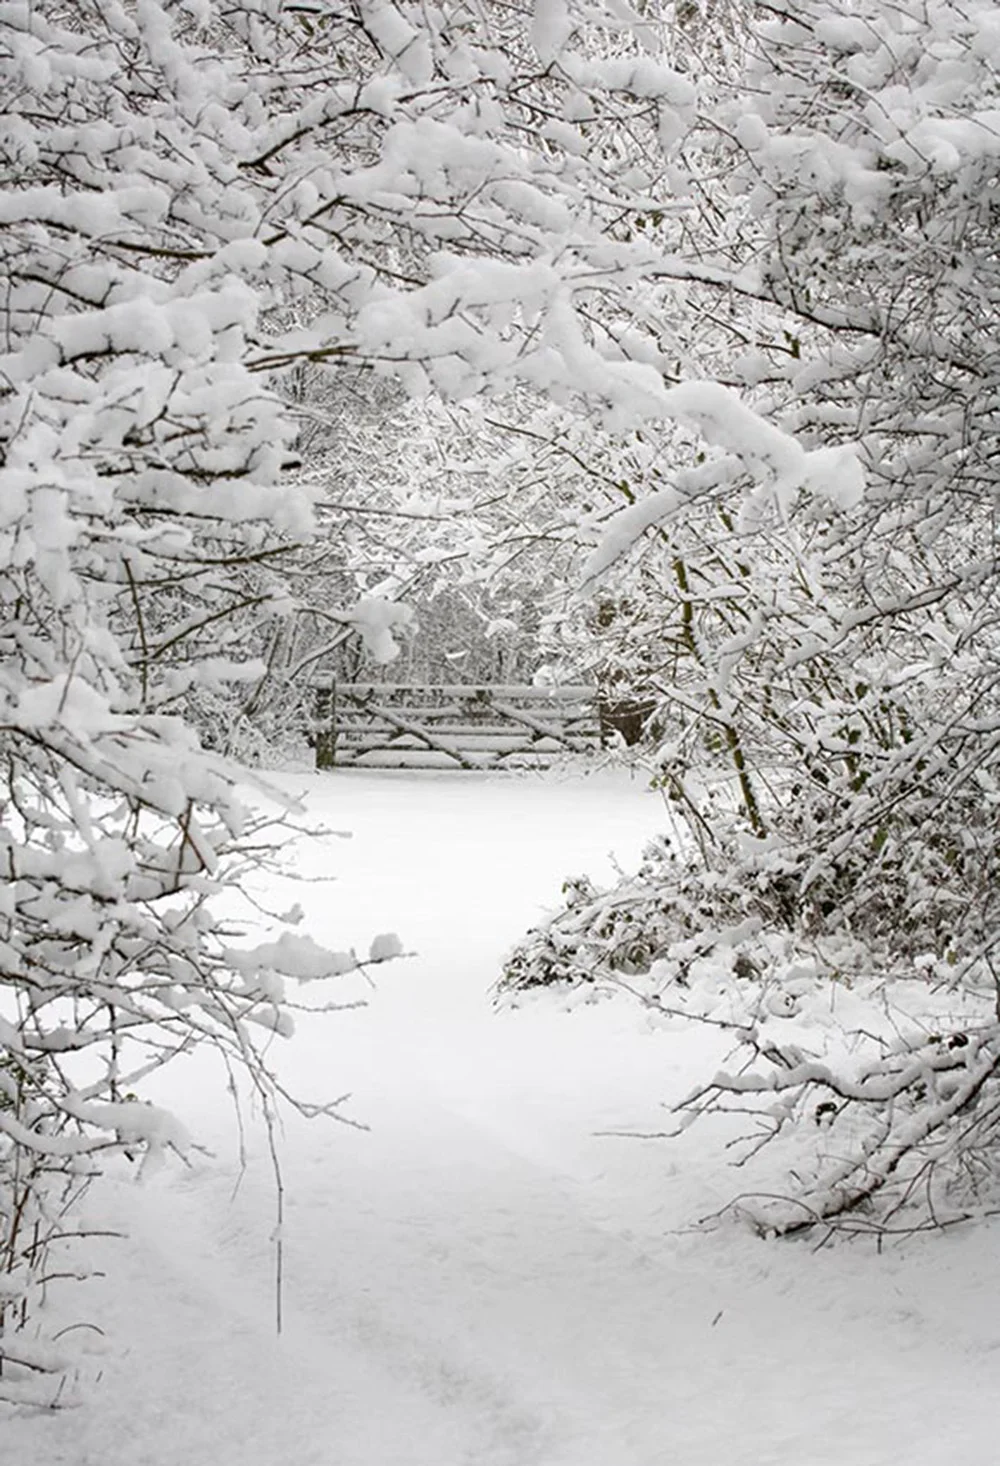 Фон для фотосъемки с изображением зимнего снега; фон для рождественской фотосъемки; реквизит для фотосъемки; виниловый тканевый фон с изображением дерева для детей